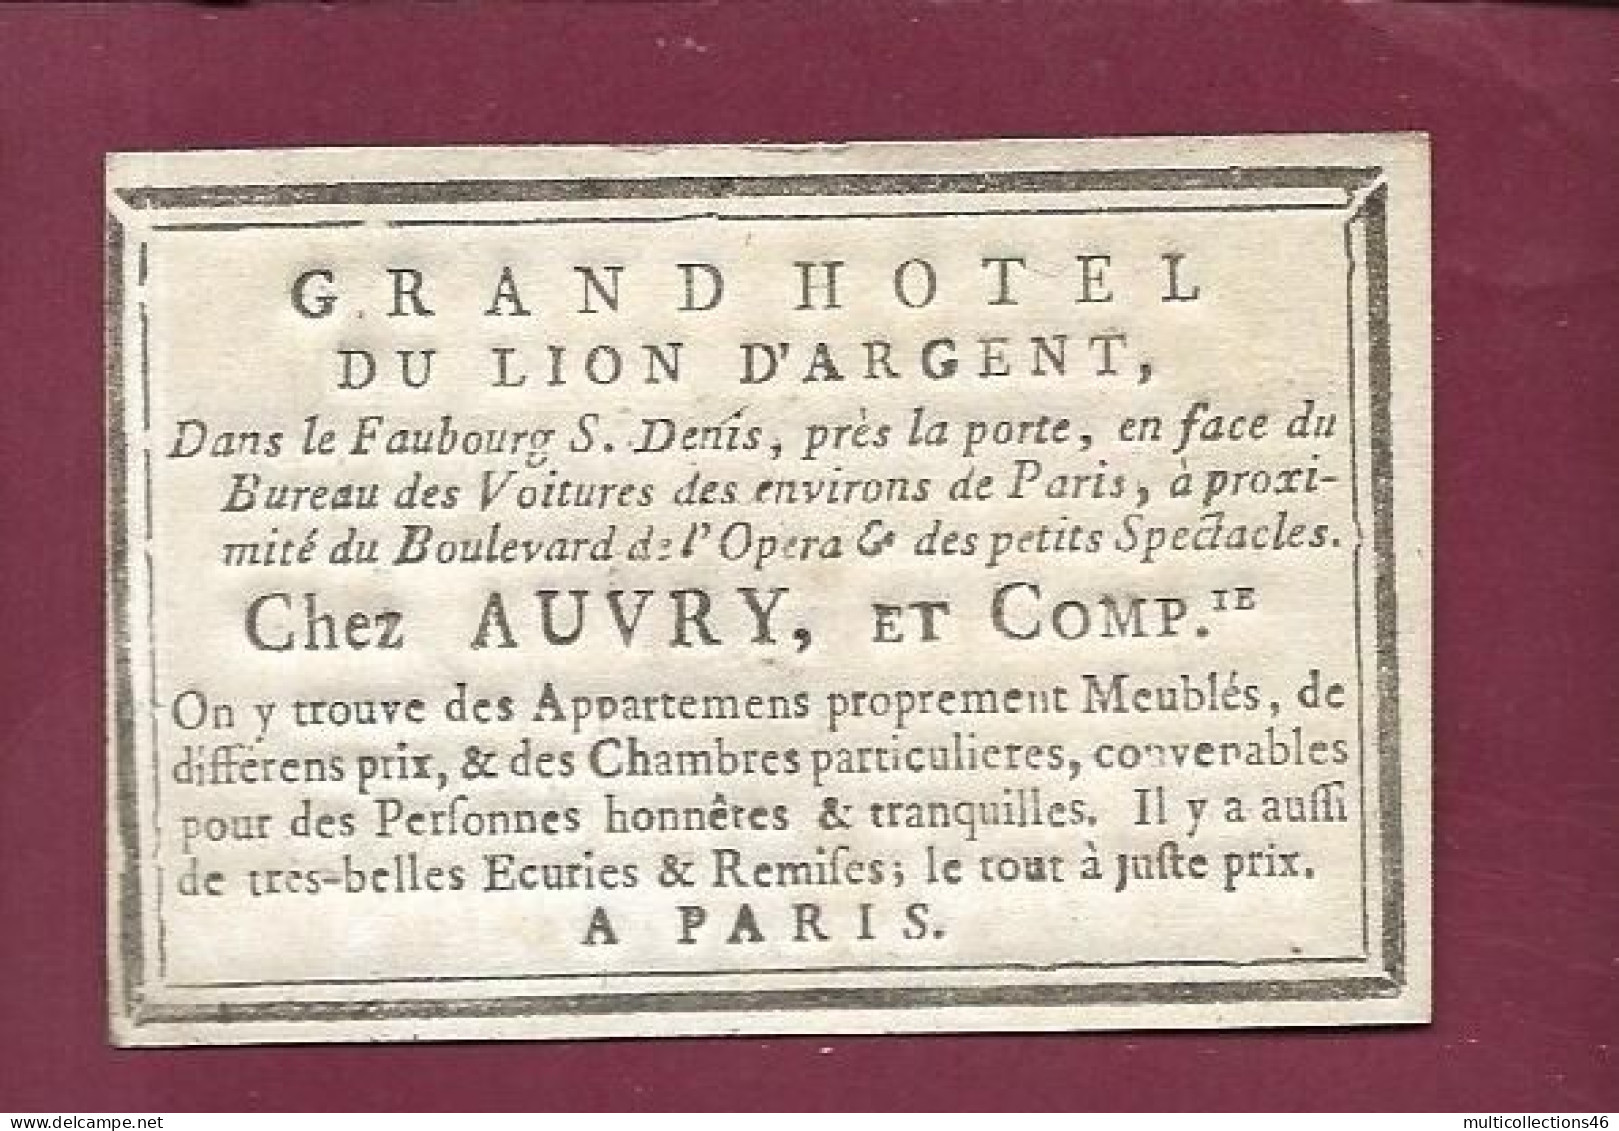 130524A - CARTE A JOUER ANCIENNE Carte De Visite Grand Hôtel Du Lion D'argent Chez AUVRY à PARIS - 8 De TREFLE - Barajas De Naipe